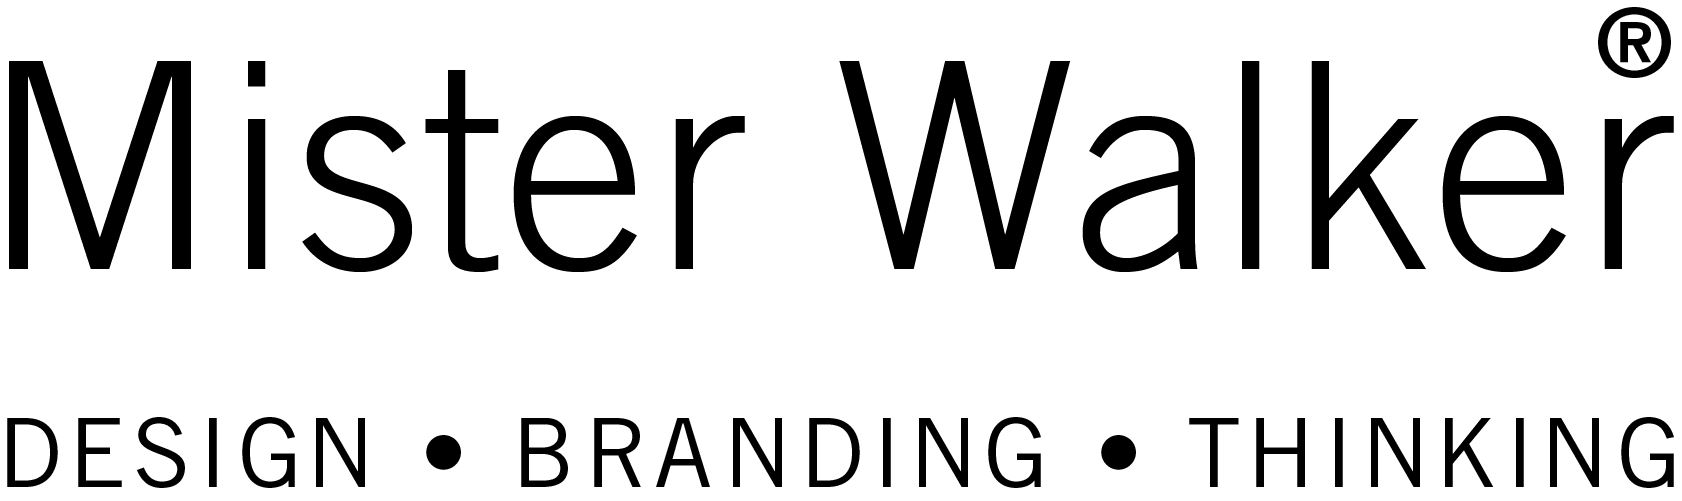 Mister_Walker_logo